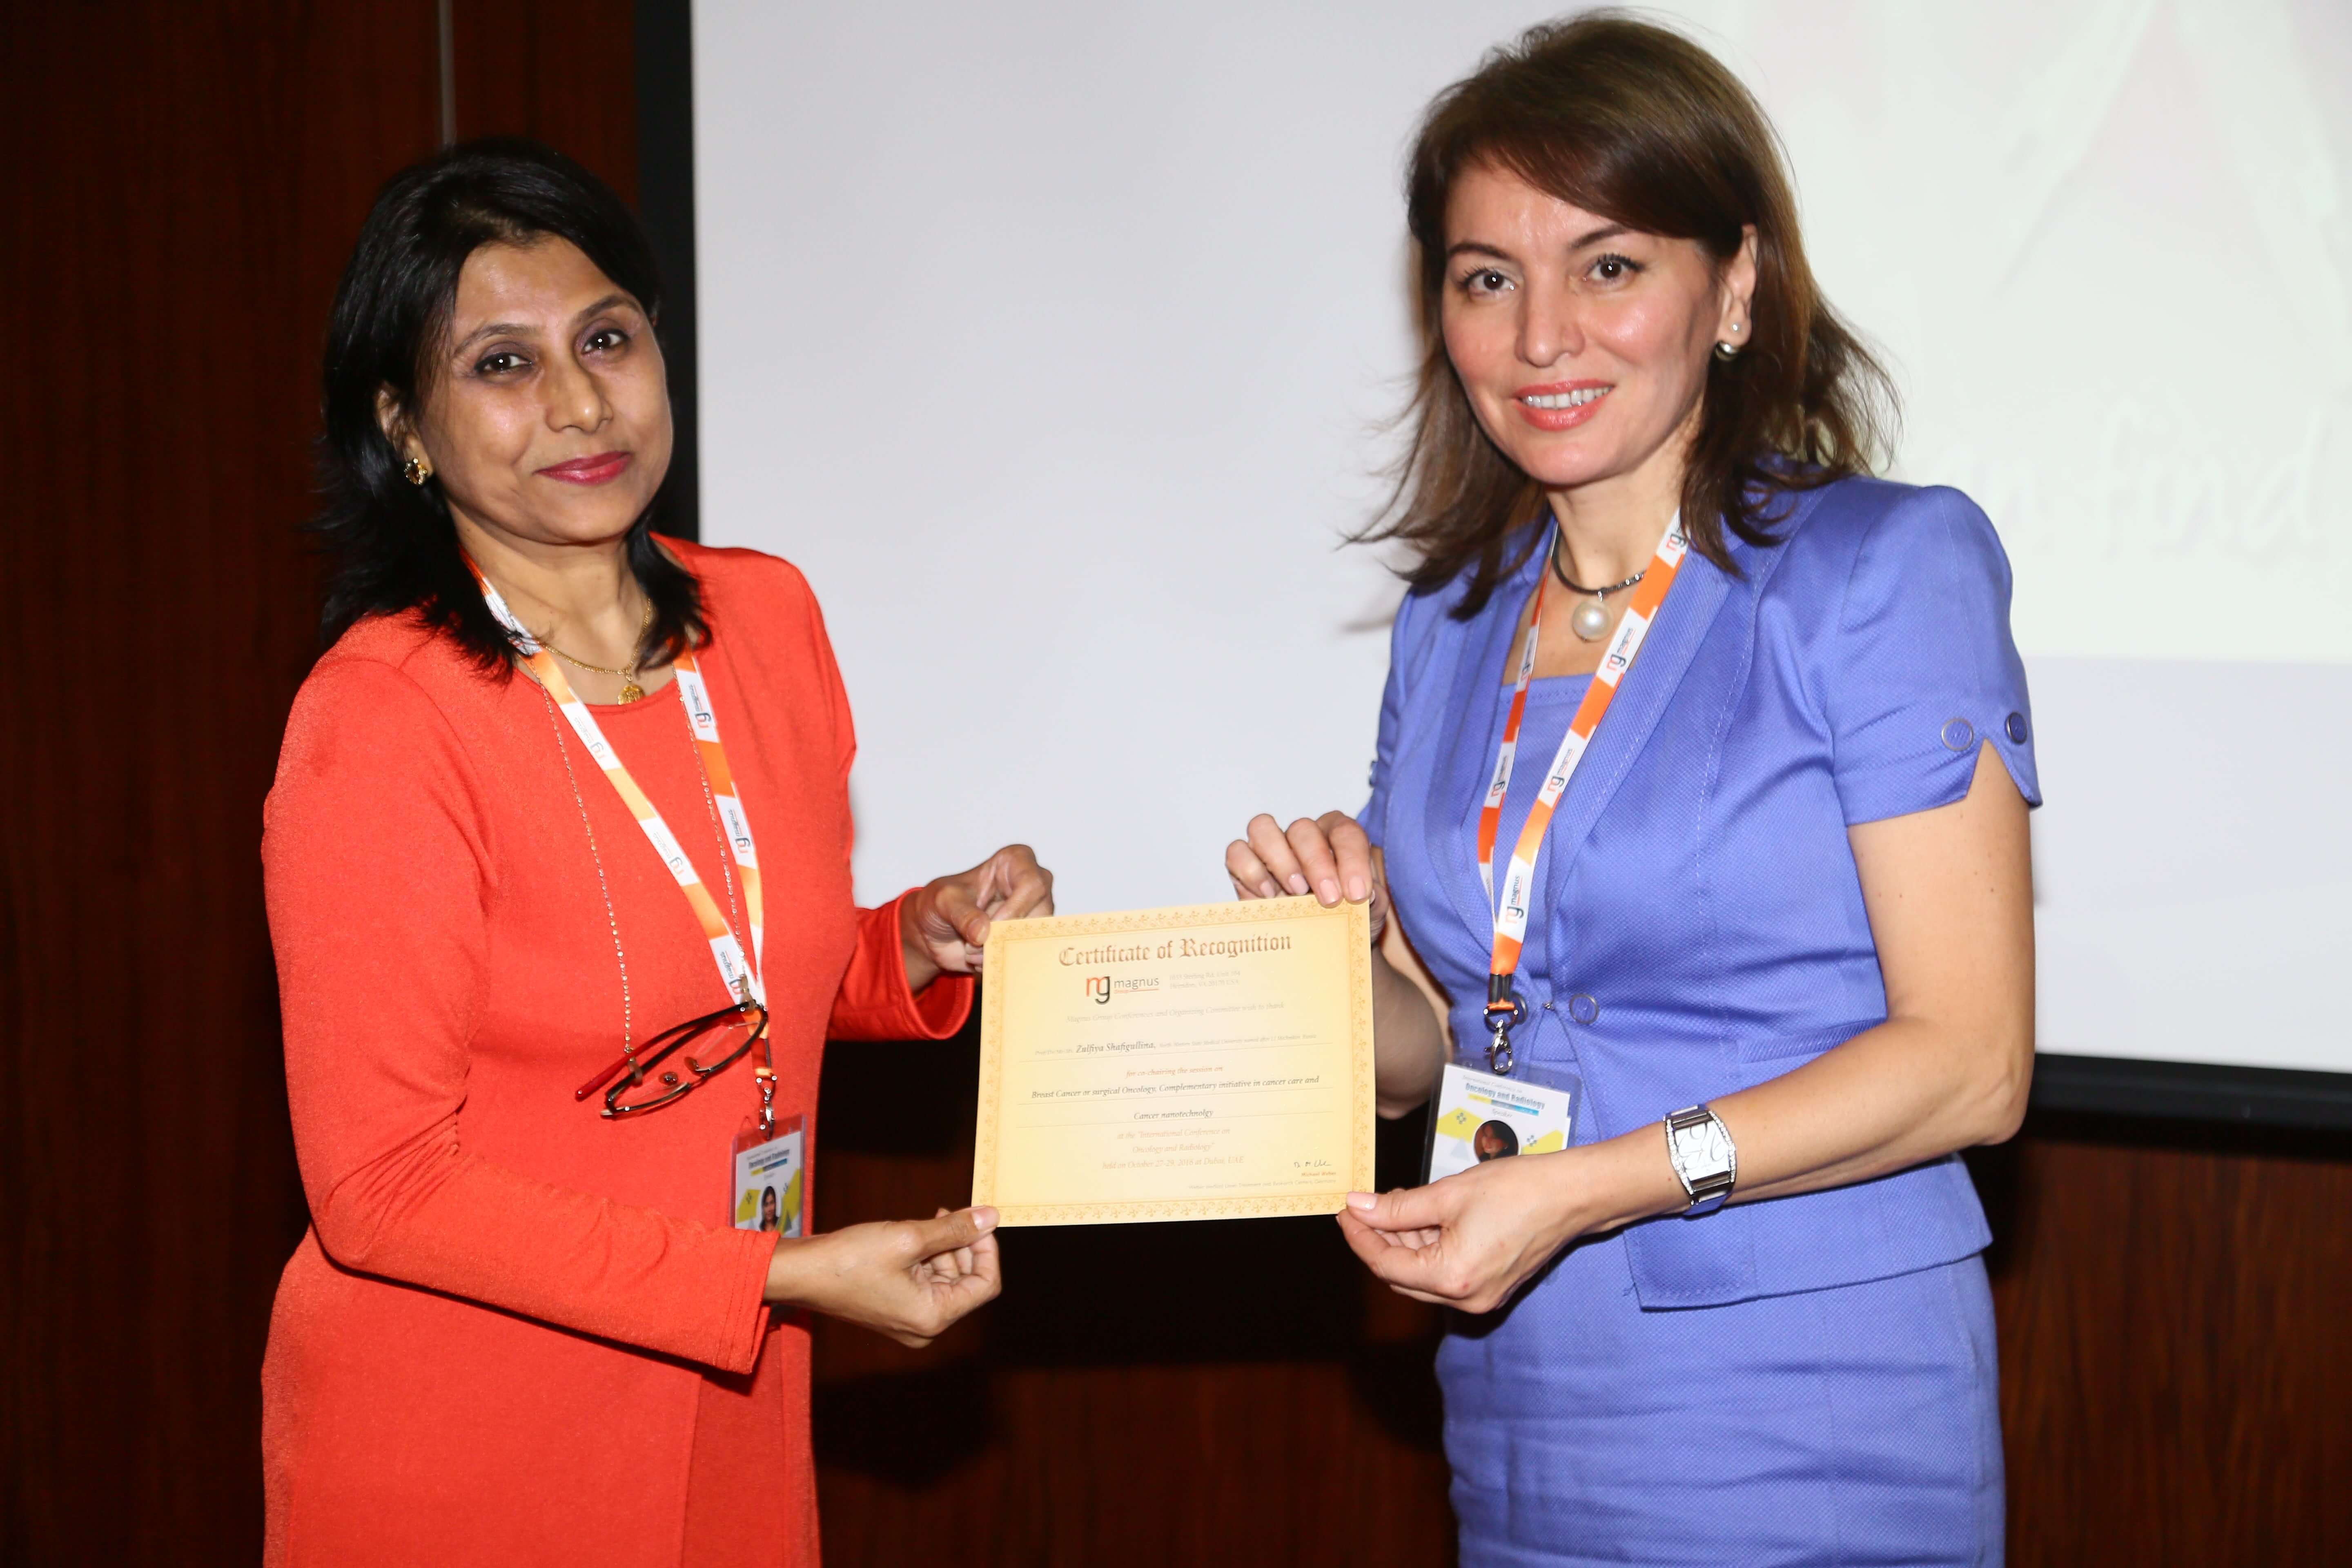 Cancer conference - Dr. Zulfiya Shafigullina